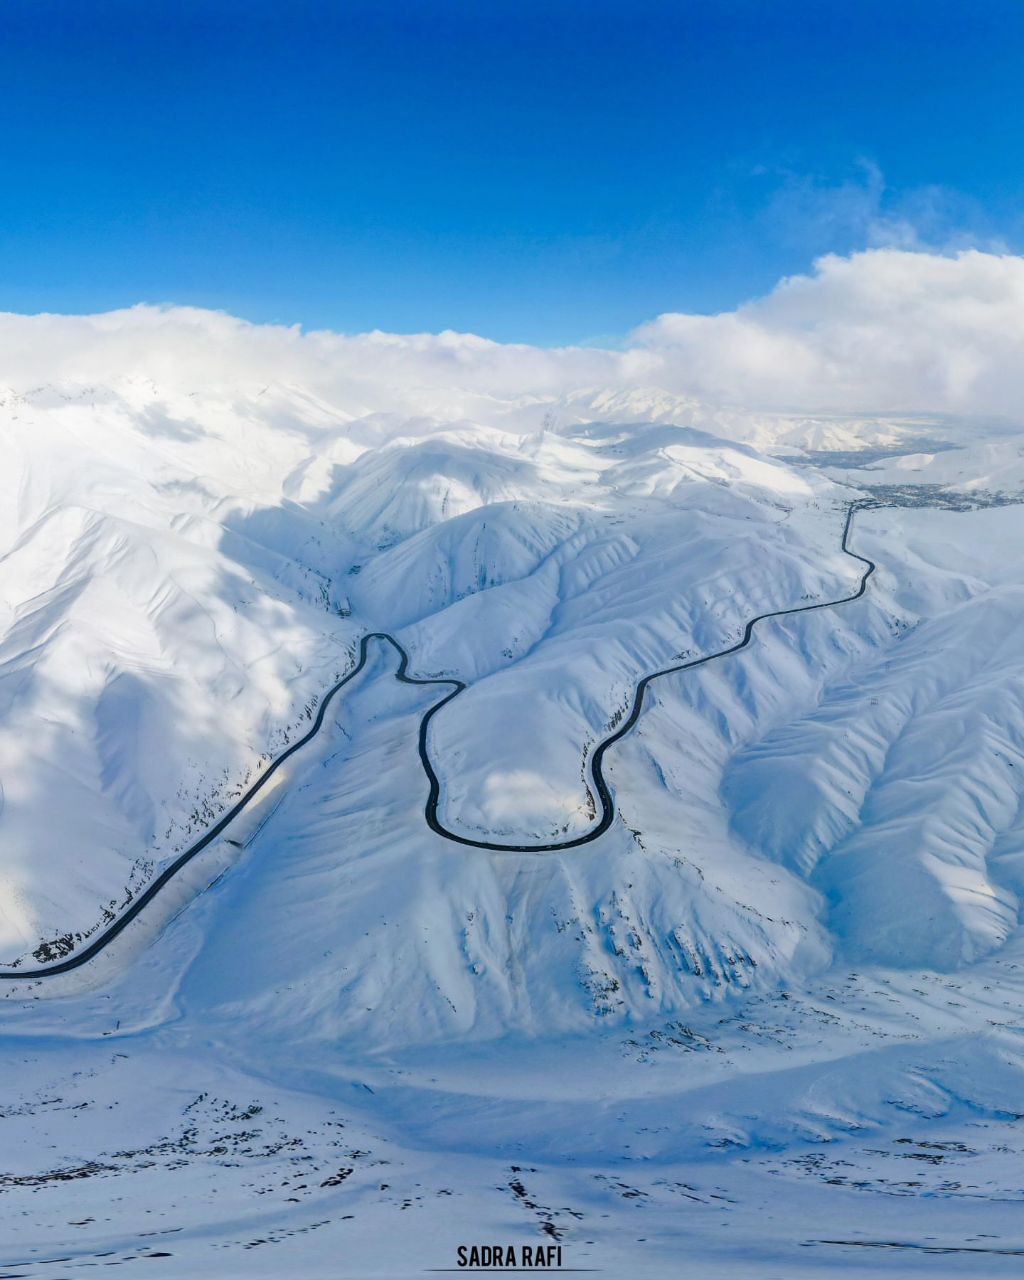 قابی فوق العاده زیبا از جاده هراز در زمستان + عکس